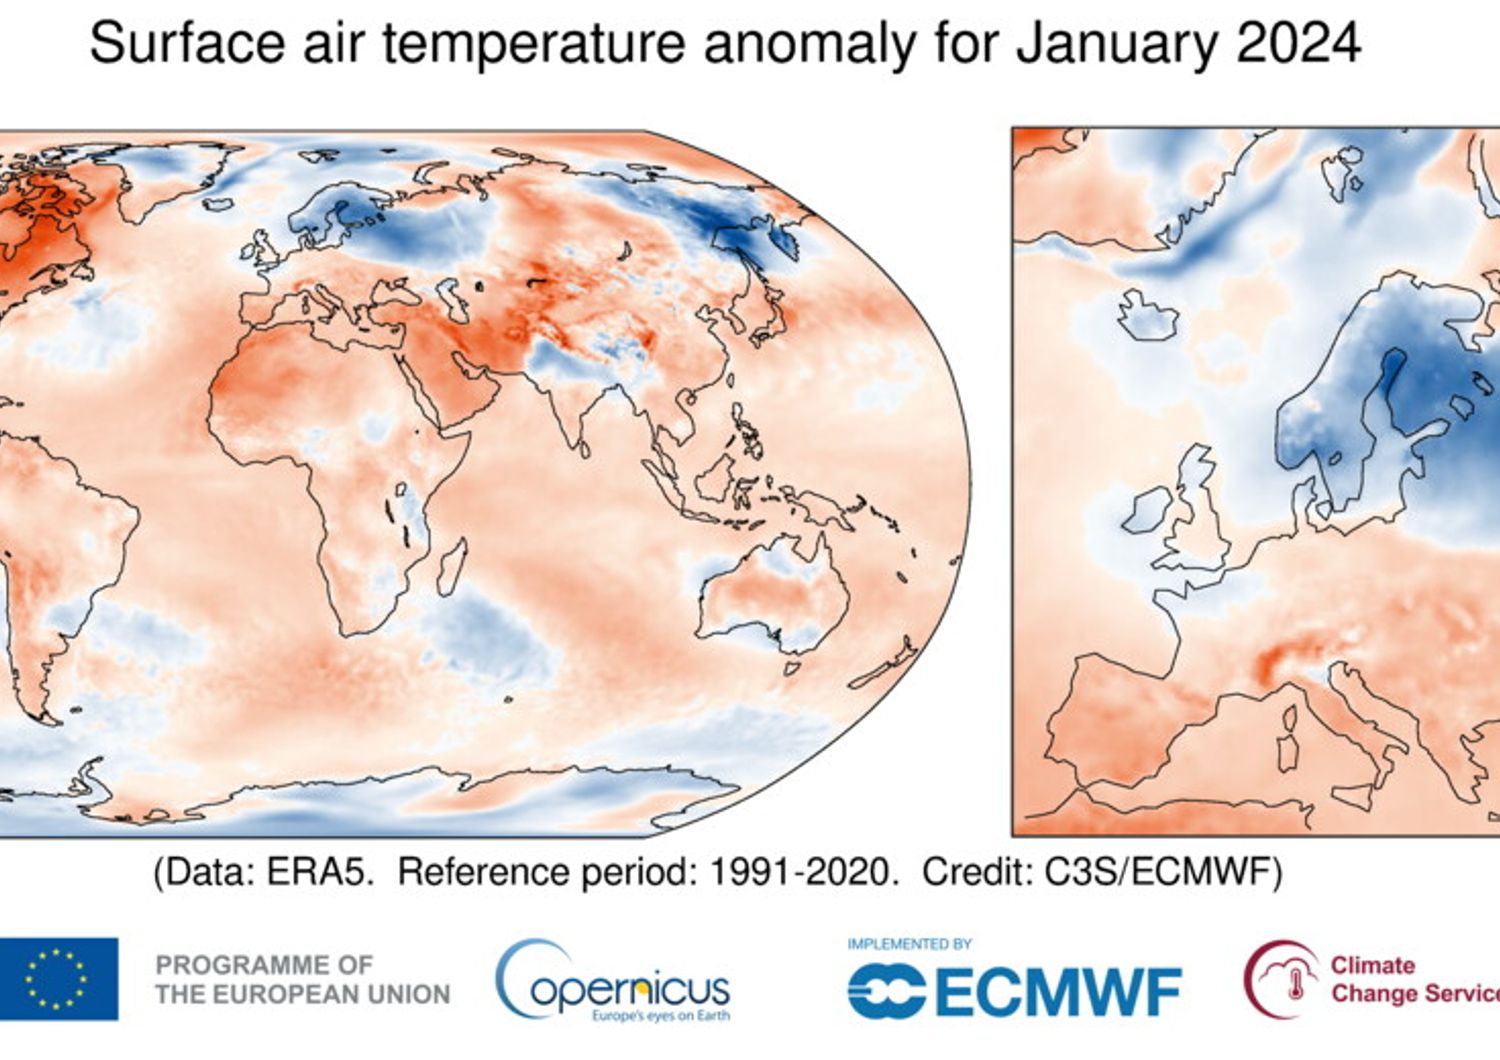 Anomalia della temperatura dell’aria superficiale per gennaio 2024 rispetto alla media di gennaio per il periodo 1991-2020. Fonte dati: ERA5.